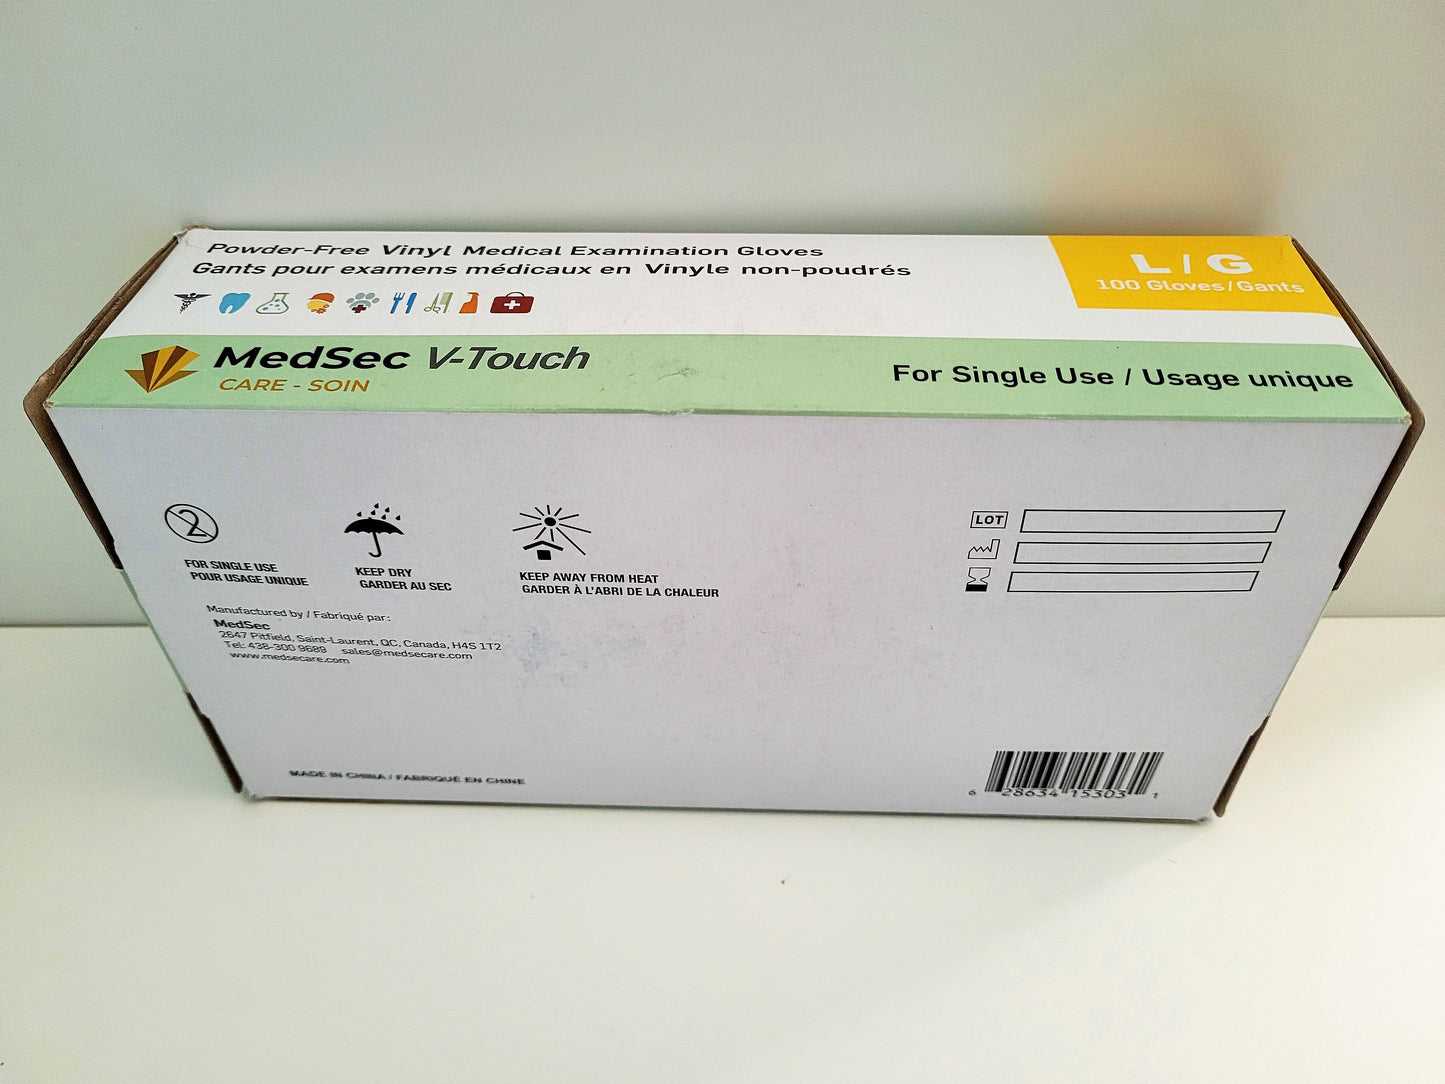 V-Touch - Gants d'examen médical en vinyle claire 4 mil (boîte de 100) - MedSecare